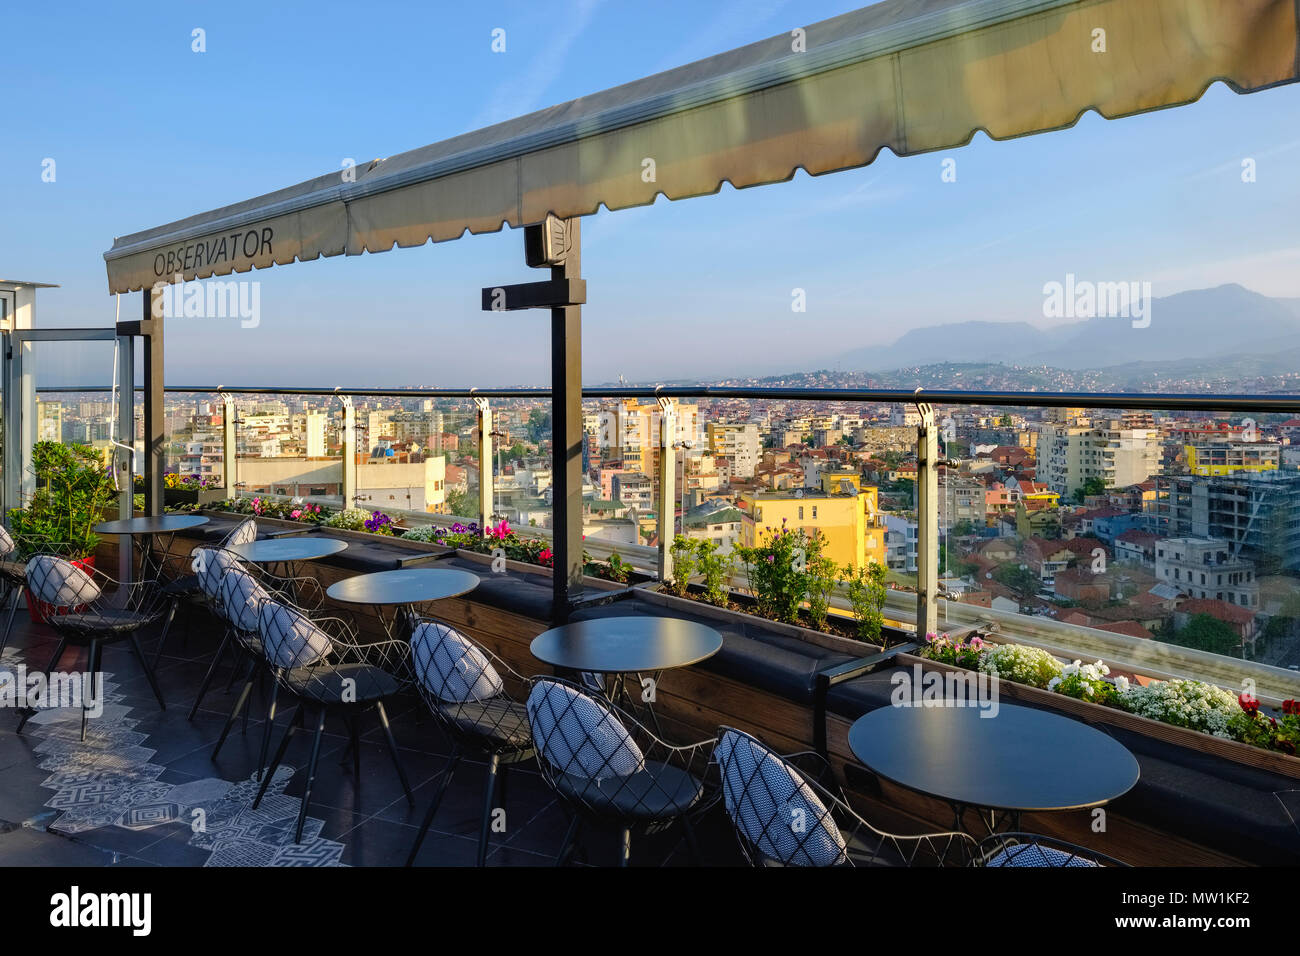 Dachterrasse von der Piano Bar Observator, Ausblick auf das Stadtzentrum, Tirana, Albanien Stockfoto